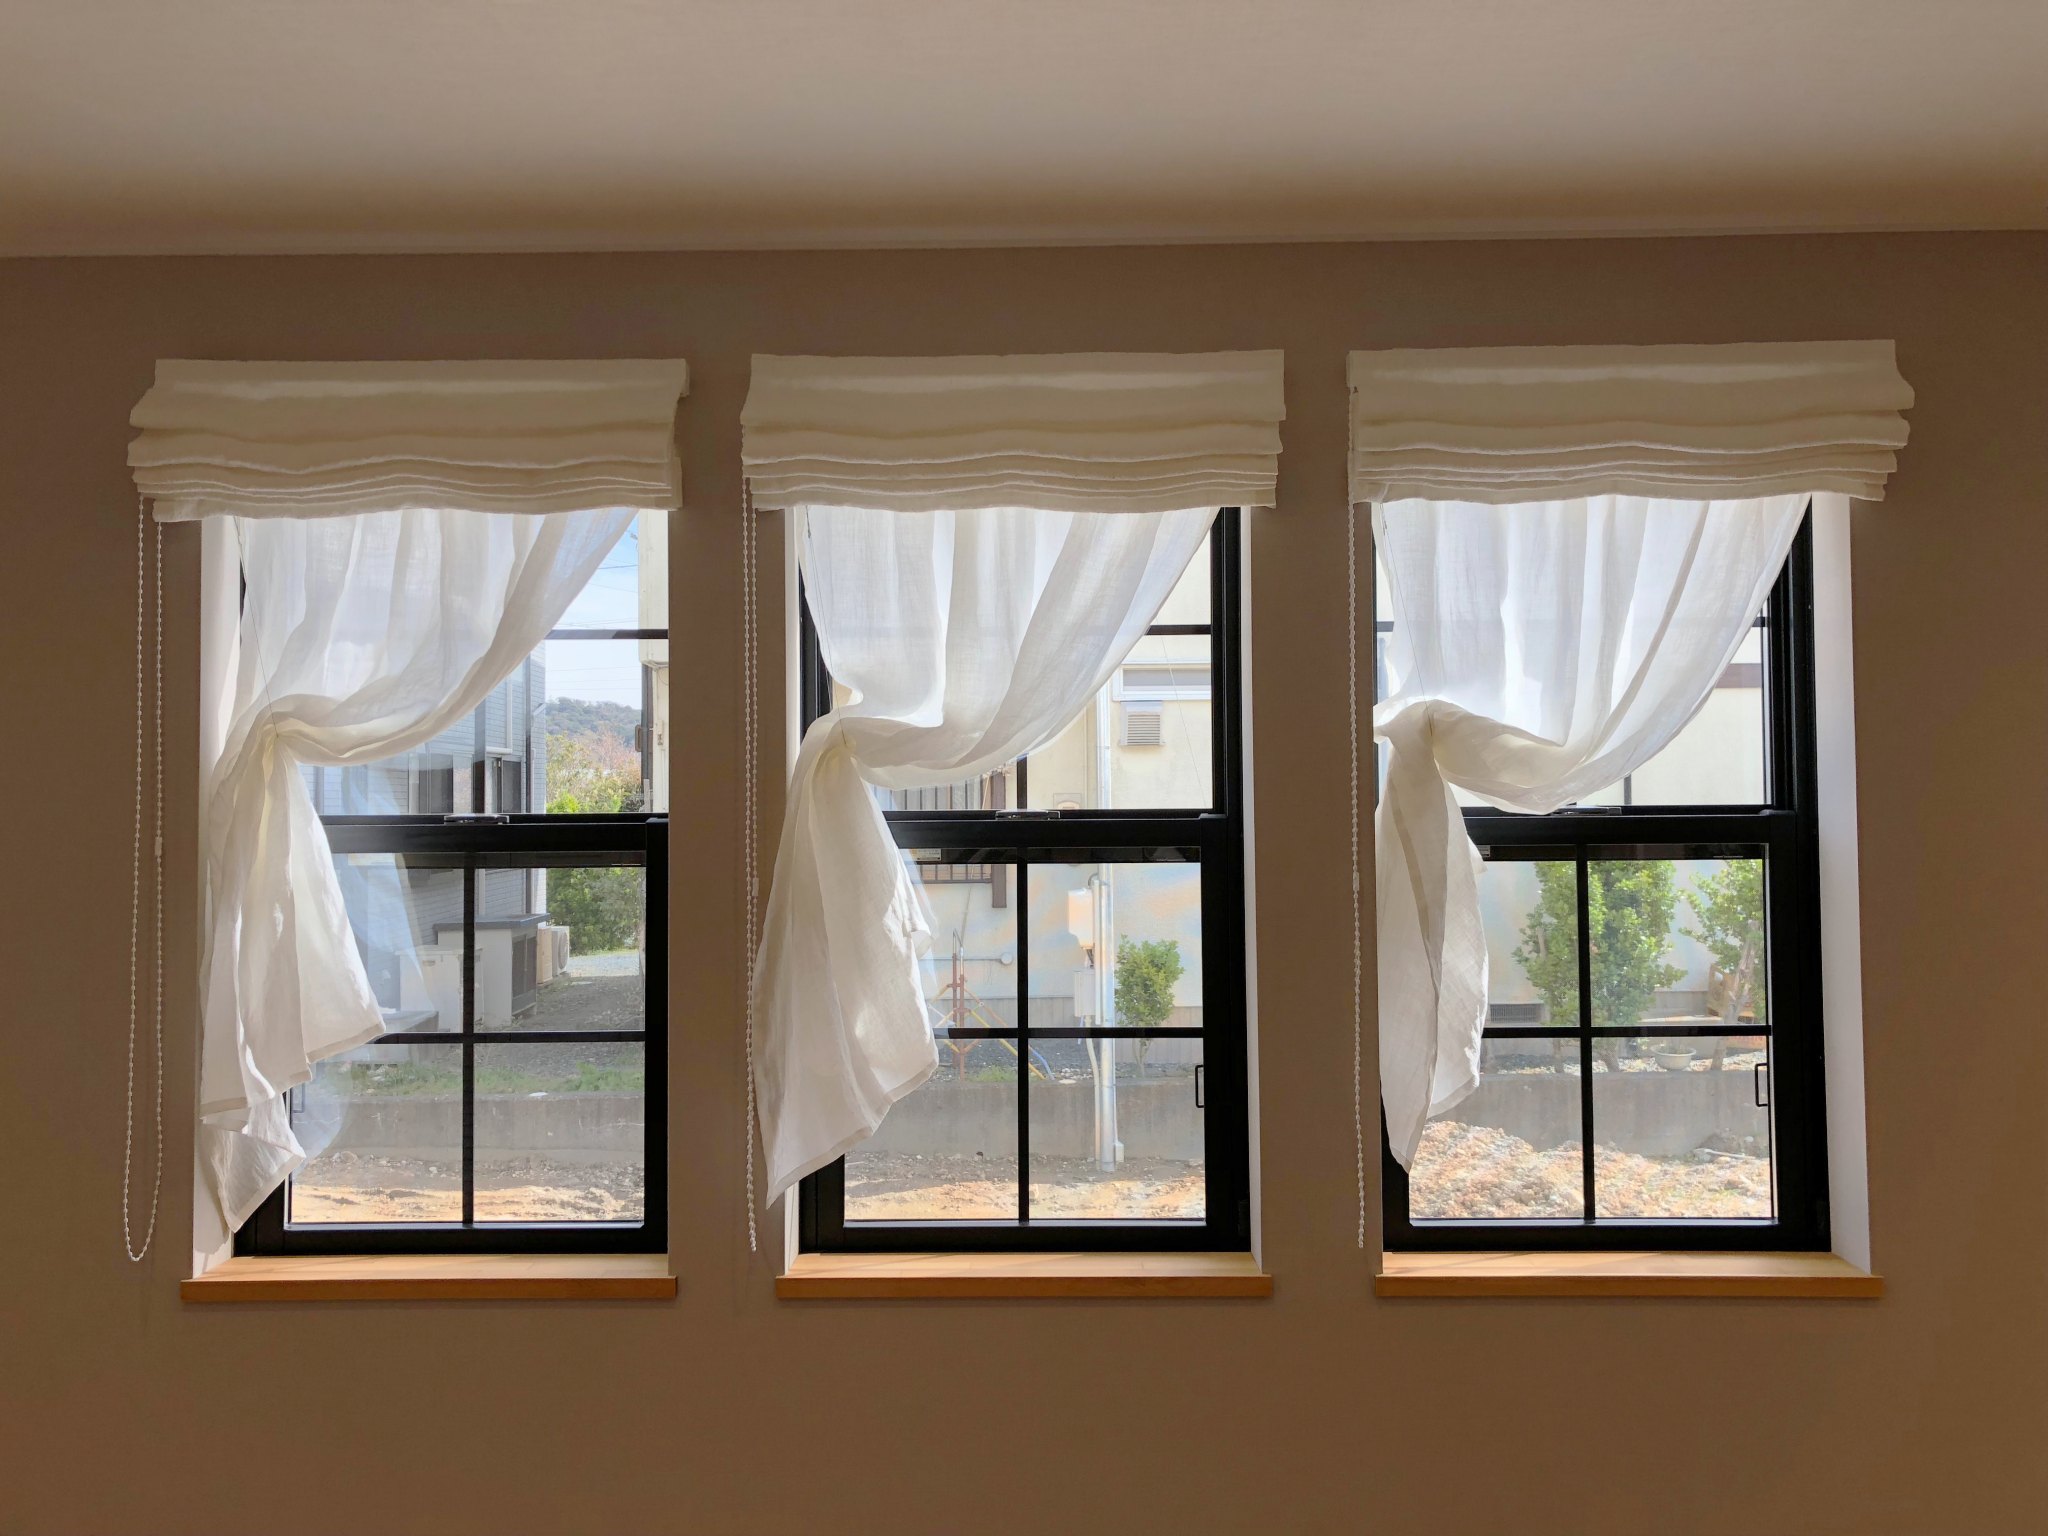 [静岡県掛川市] 3連窓を彩るリネンのシェードとカーテン | リネンカーテン | トレジュール | 麻や綿のオーダーカーテン